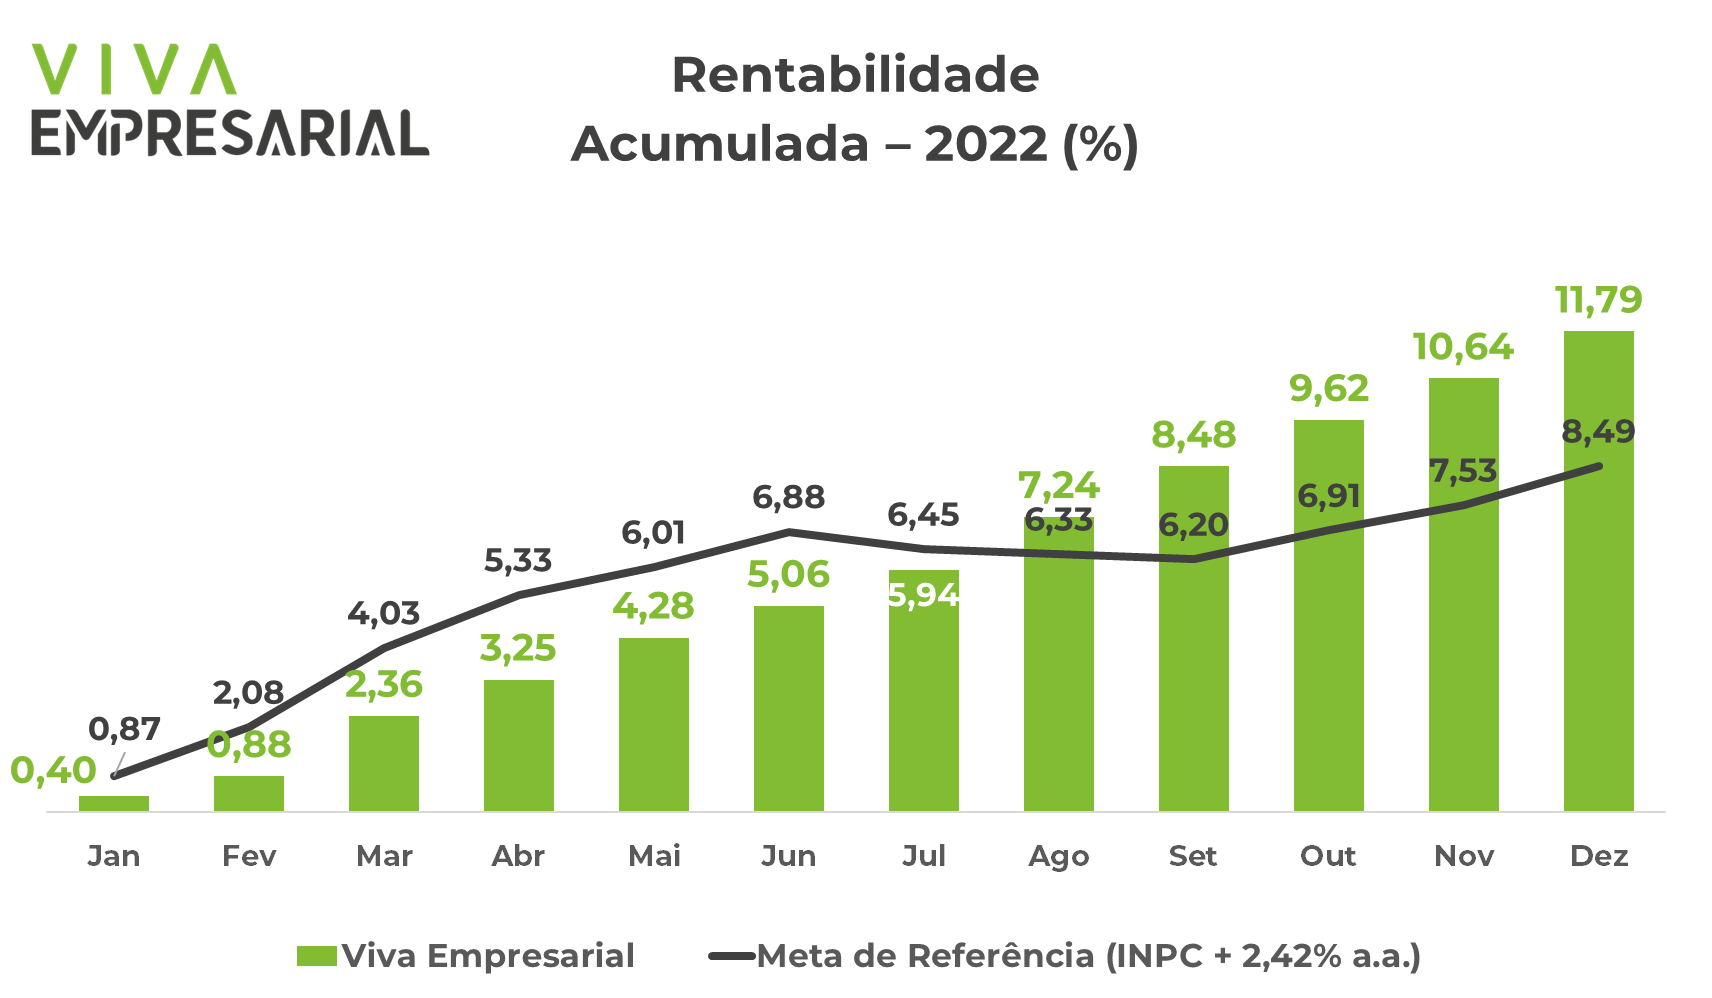 Investimentos Viva Federativo Dez/2022